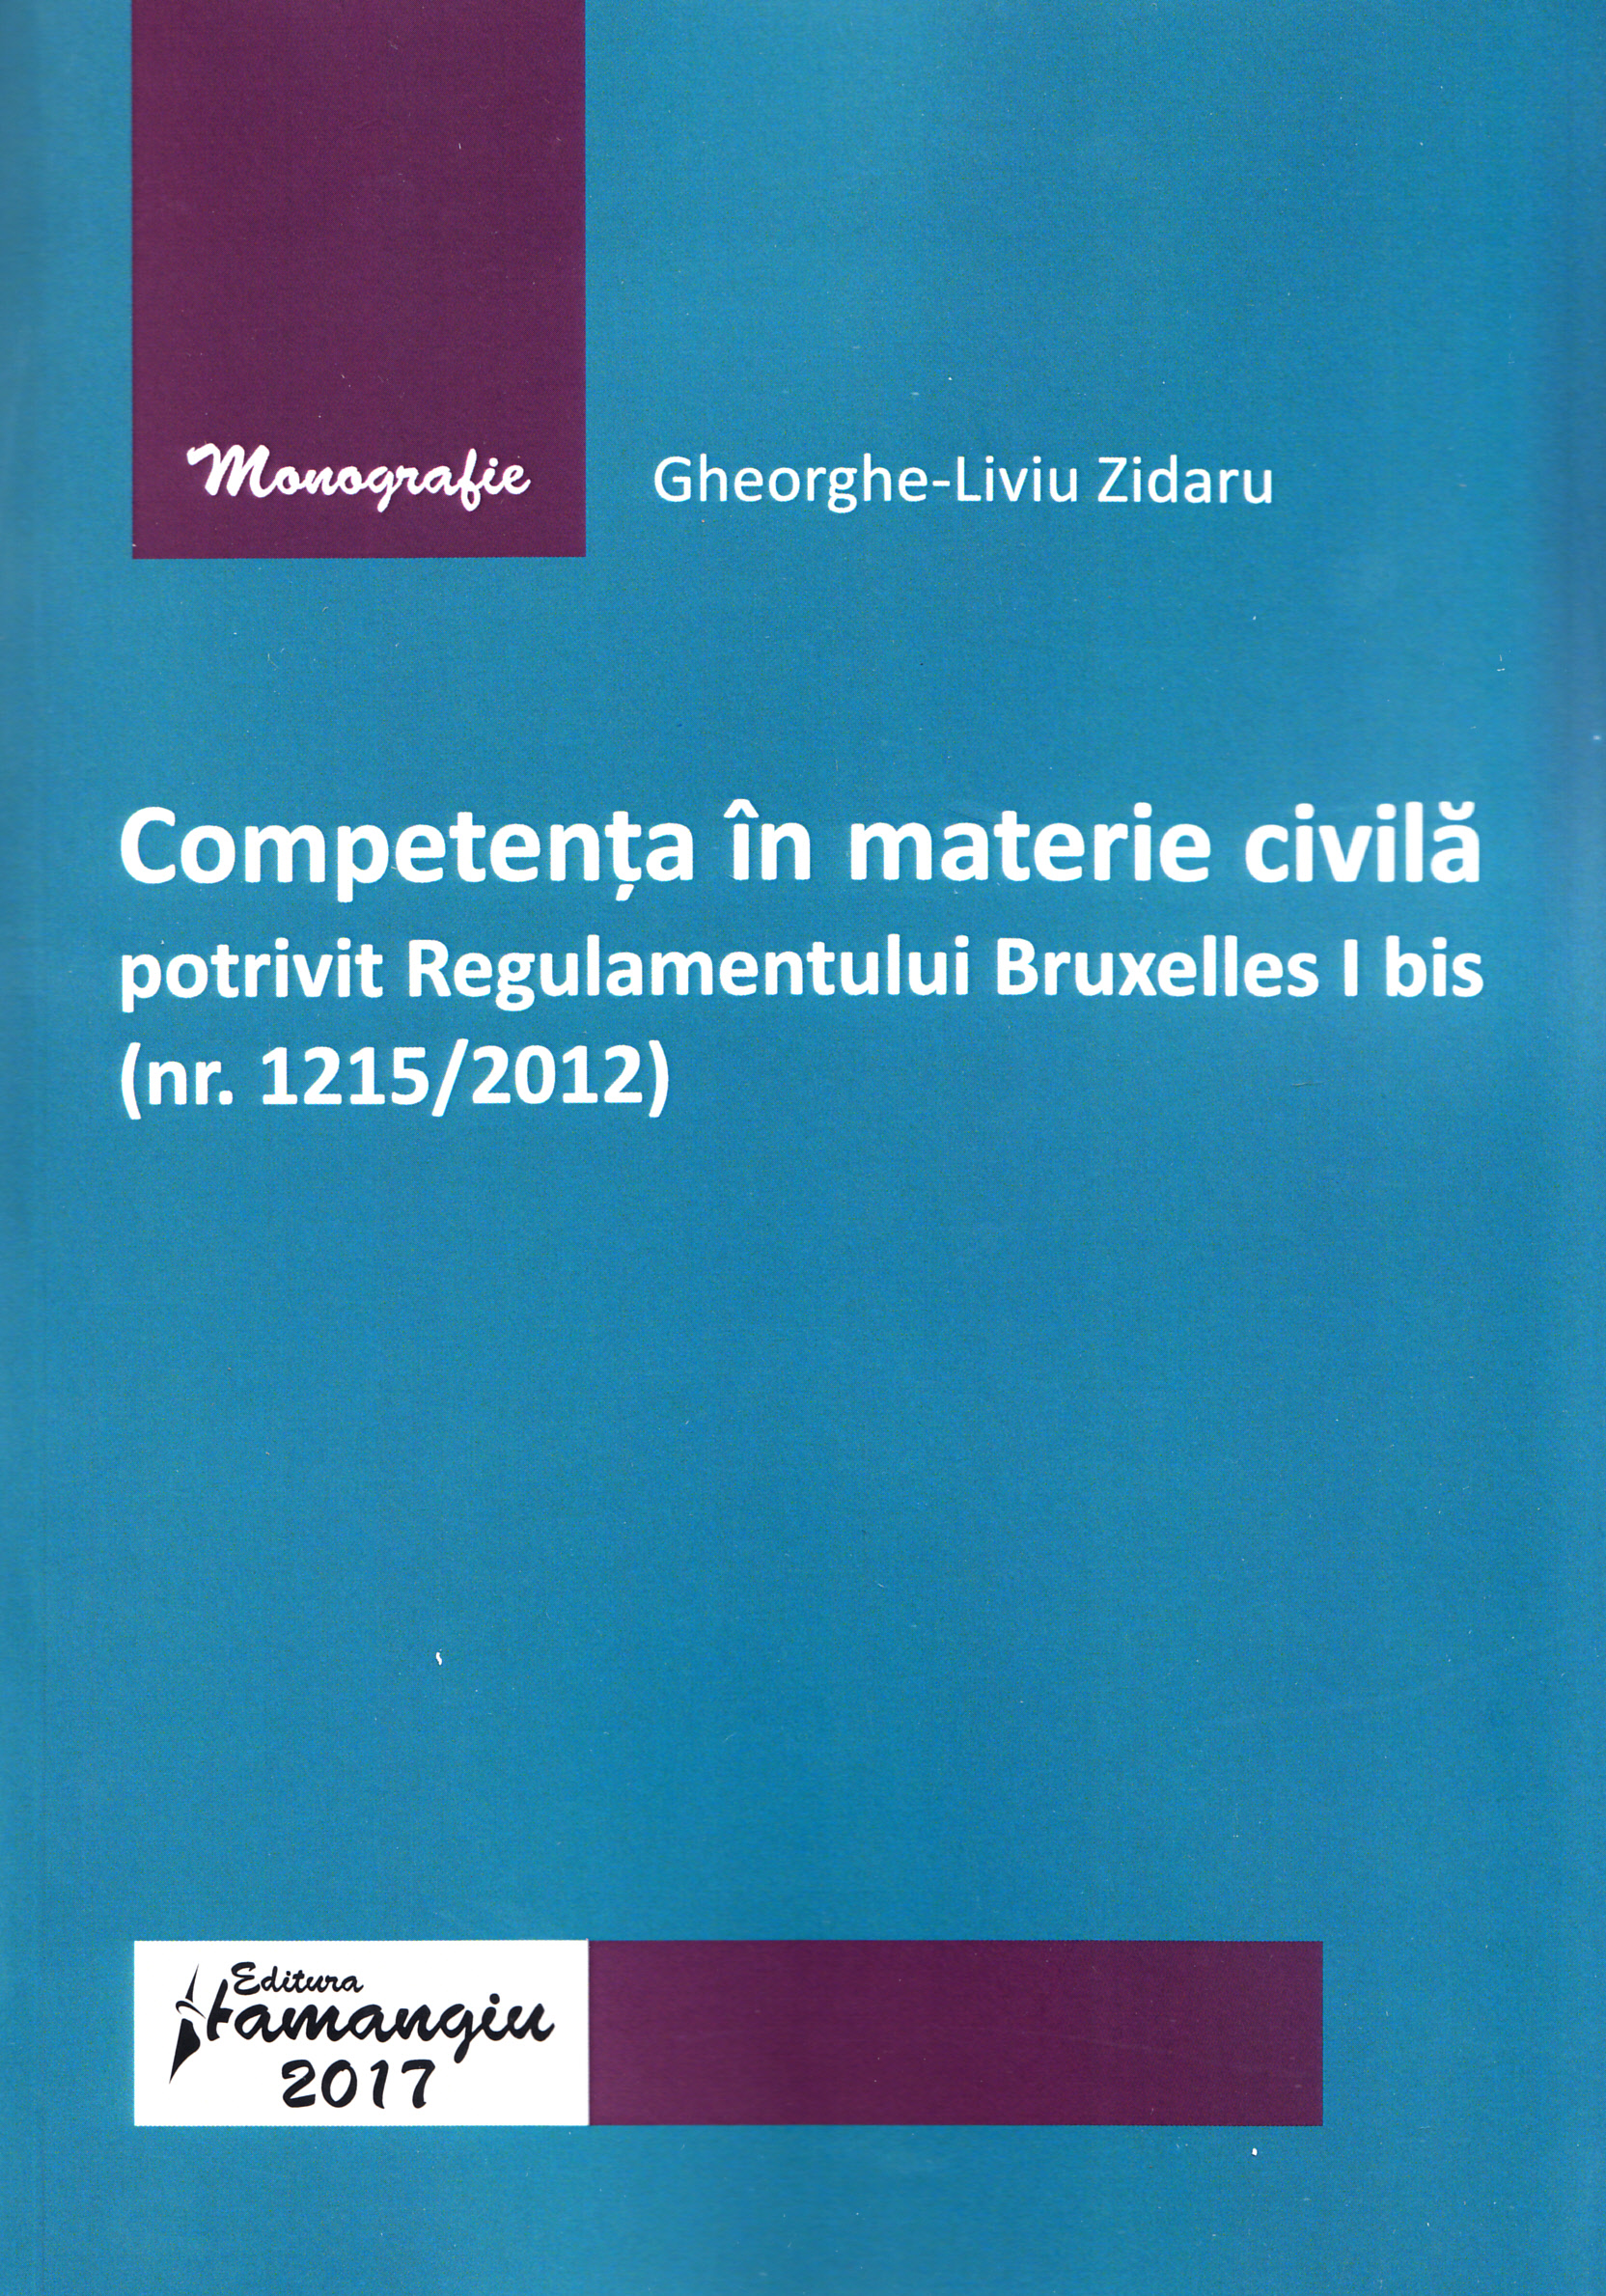 Competenta in materie civila potrivit regulamentului Bruxelles I bis - Gheorghe-Liviu Zidaru